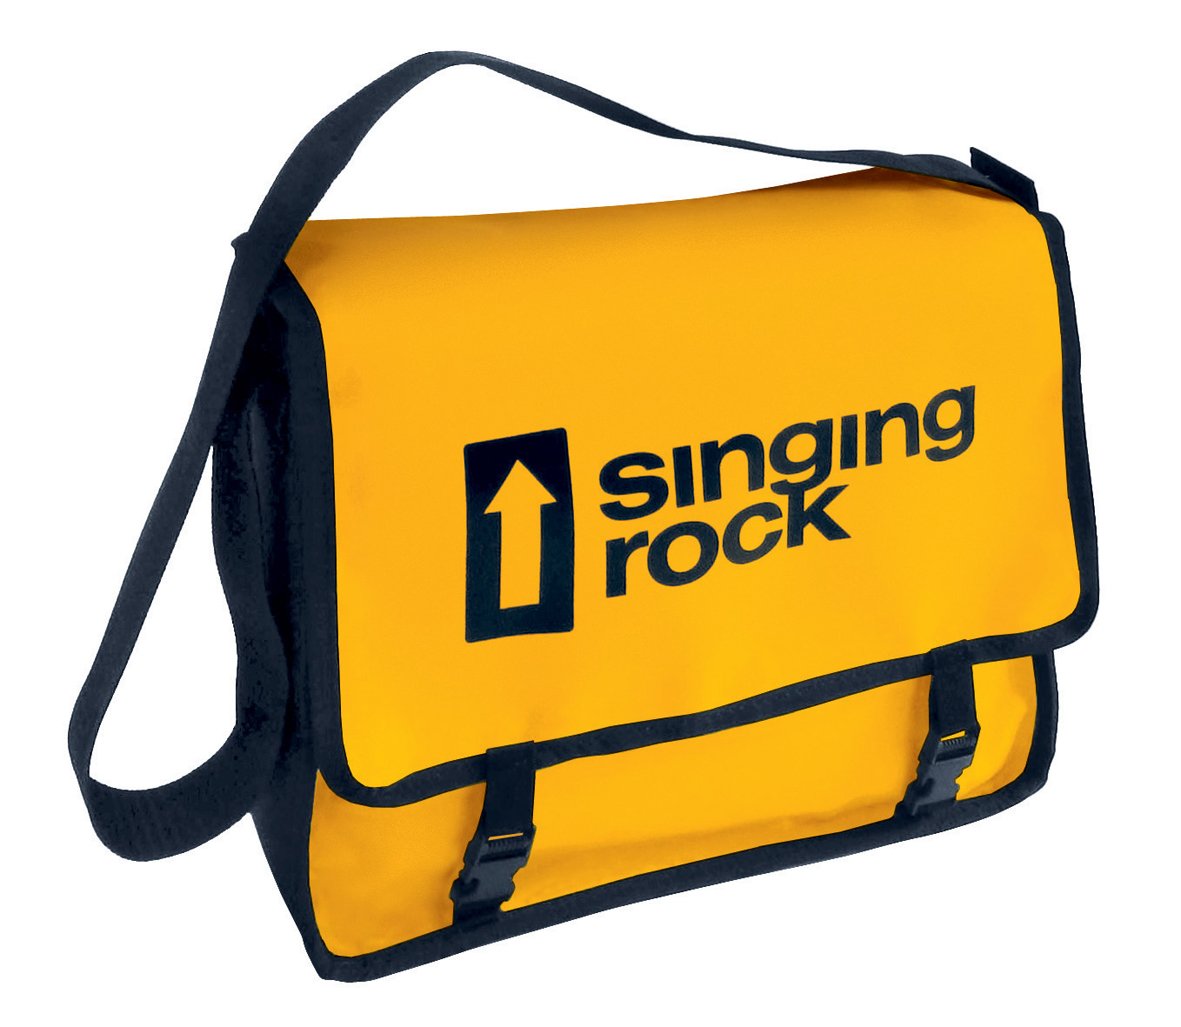 Singing Rock Fine Line Bag